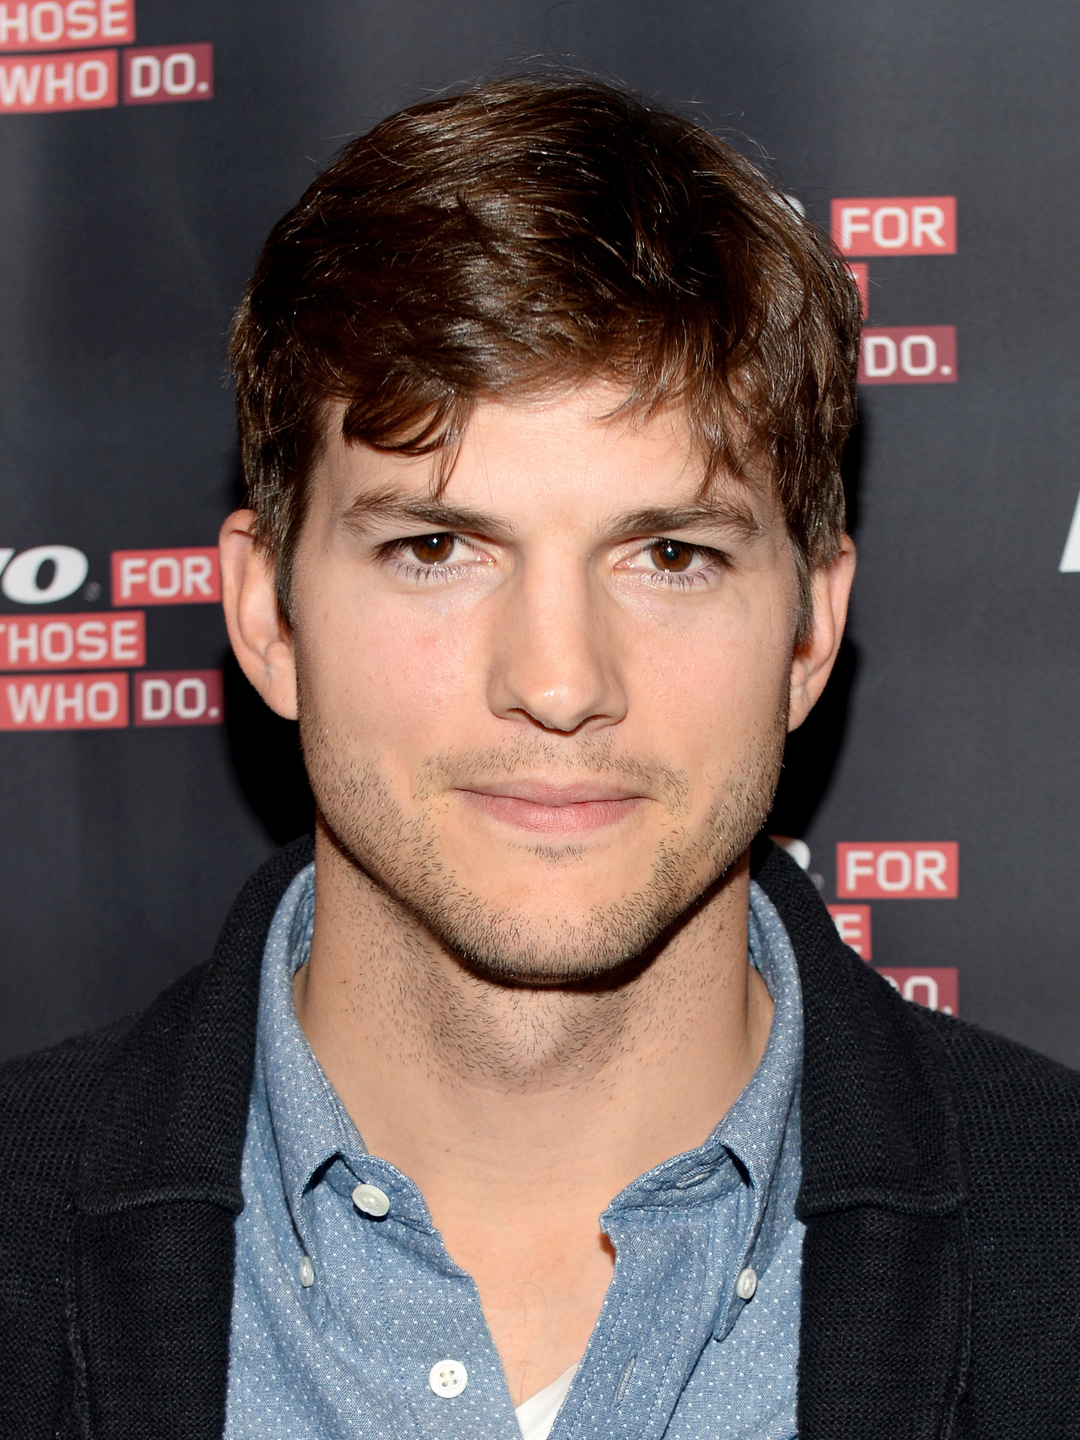 Ashton Kutcher who is his father